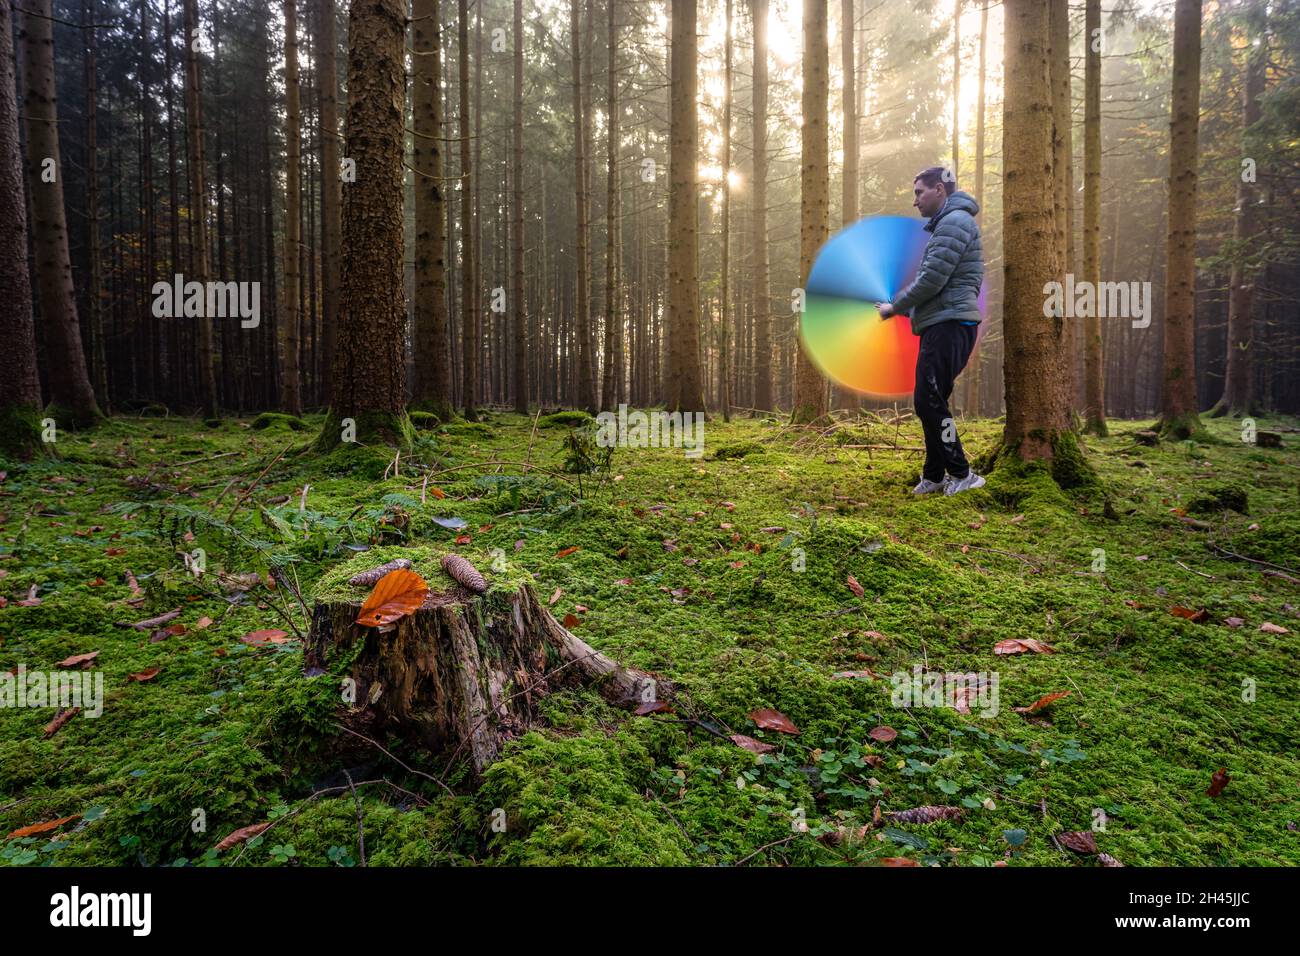 Ein glücklicher Mann steht im hellen und moosigen Wald und dreht seinen Regenbogenschirm schnell, um einen farbenfrohen Effekt zu erzielen. Schöner Herbst Stockfoto